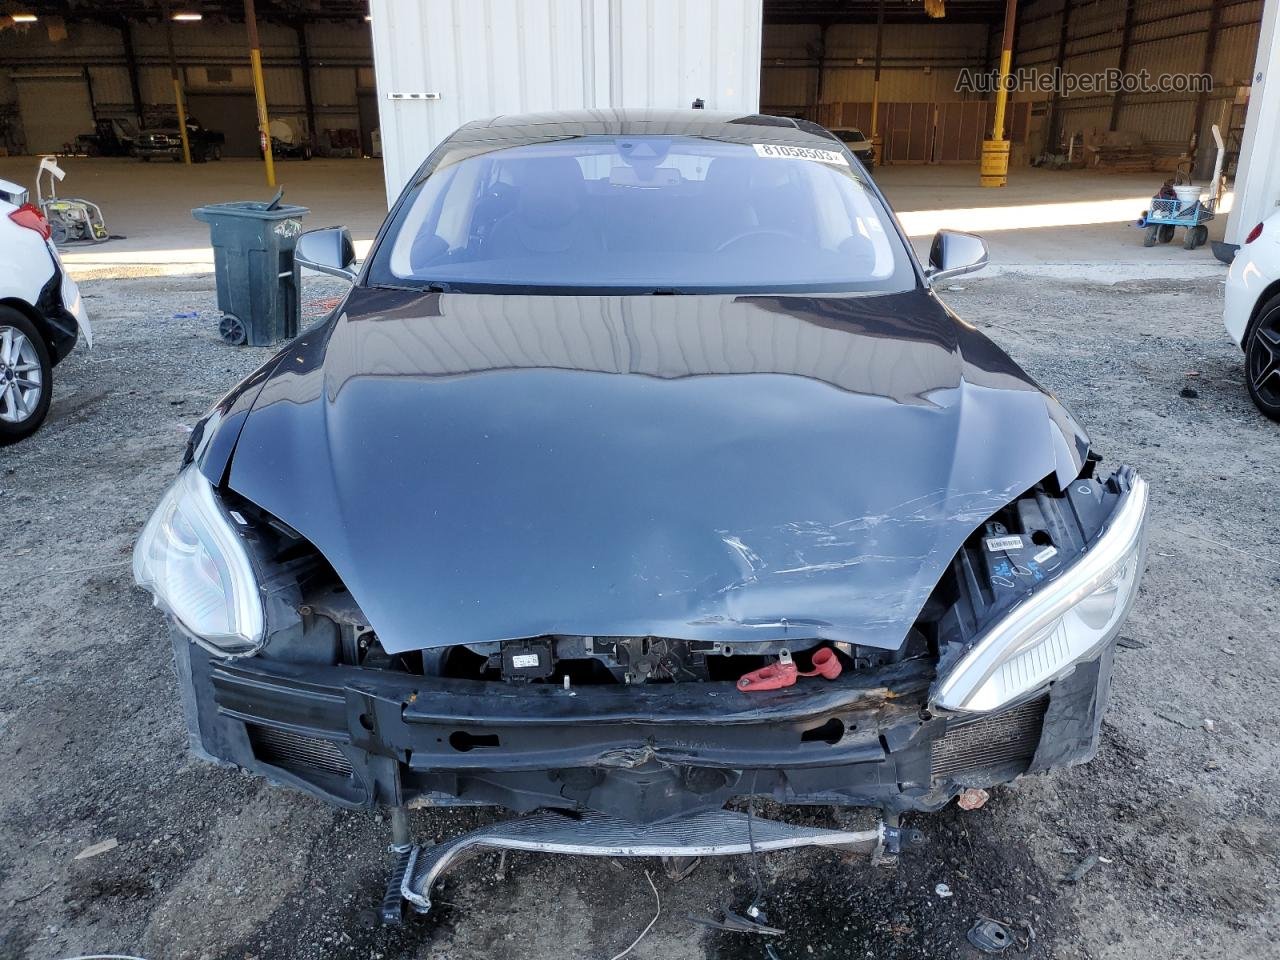 2014 Tesla Model S  Угольный vin: 5YJSA1H12EFP56771